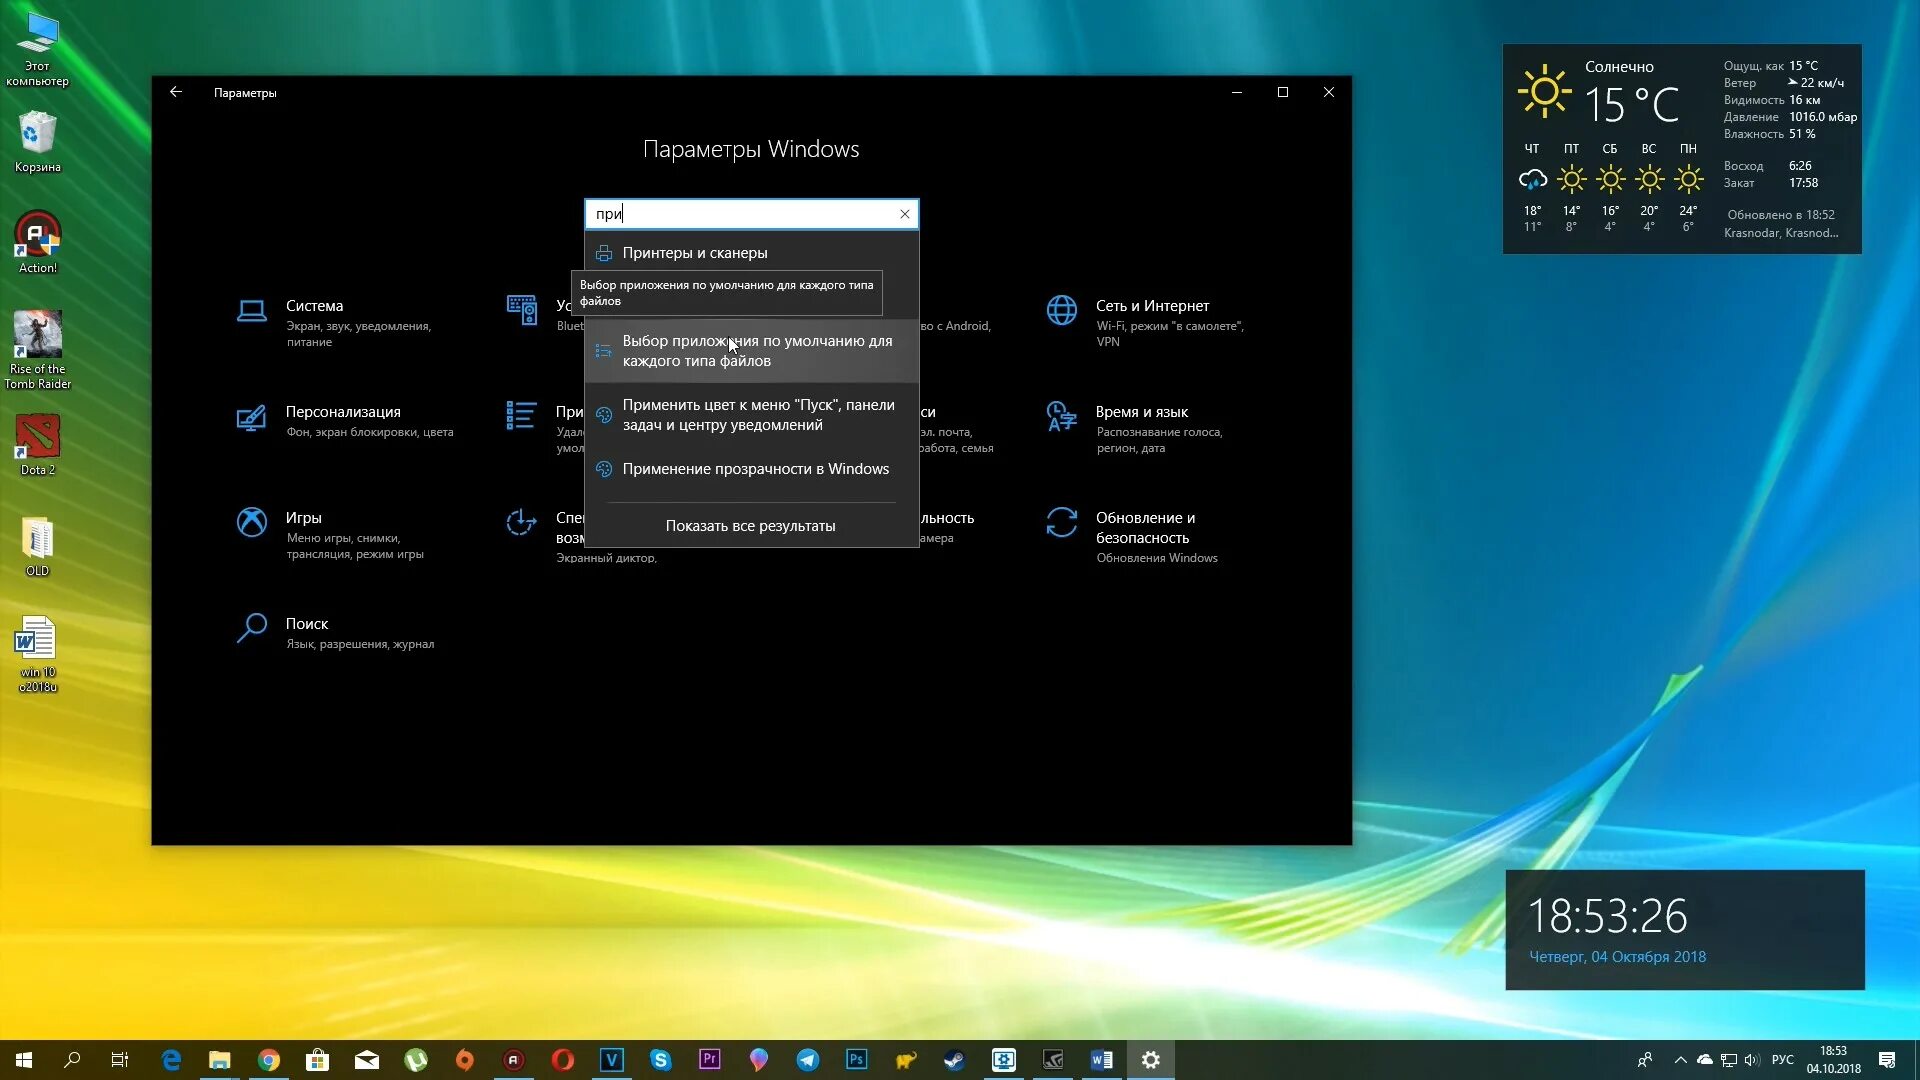 Октябрь 2018 10. Экран обновления Windows 10. Фото обновления виндовс 10. Центр обновления Windows на компьютере. Обновление Windows 10 презентация.